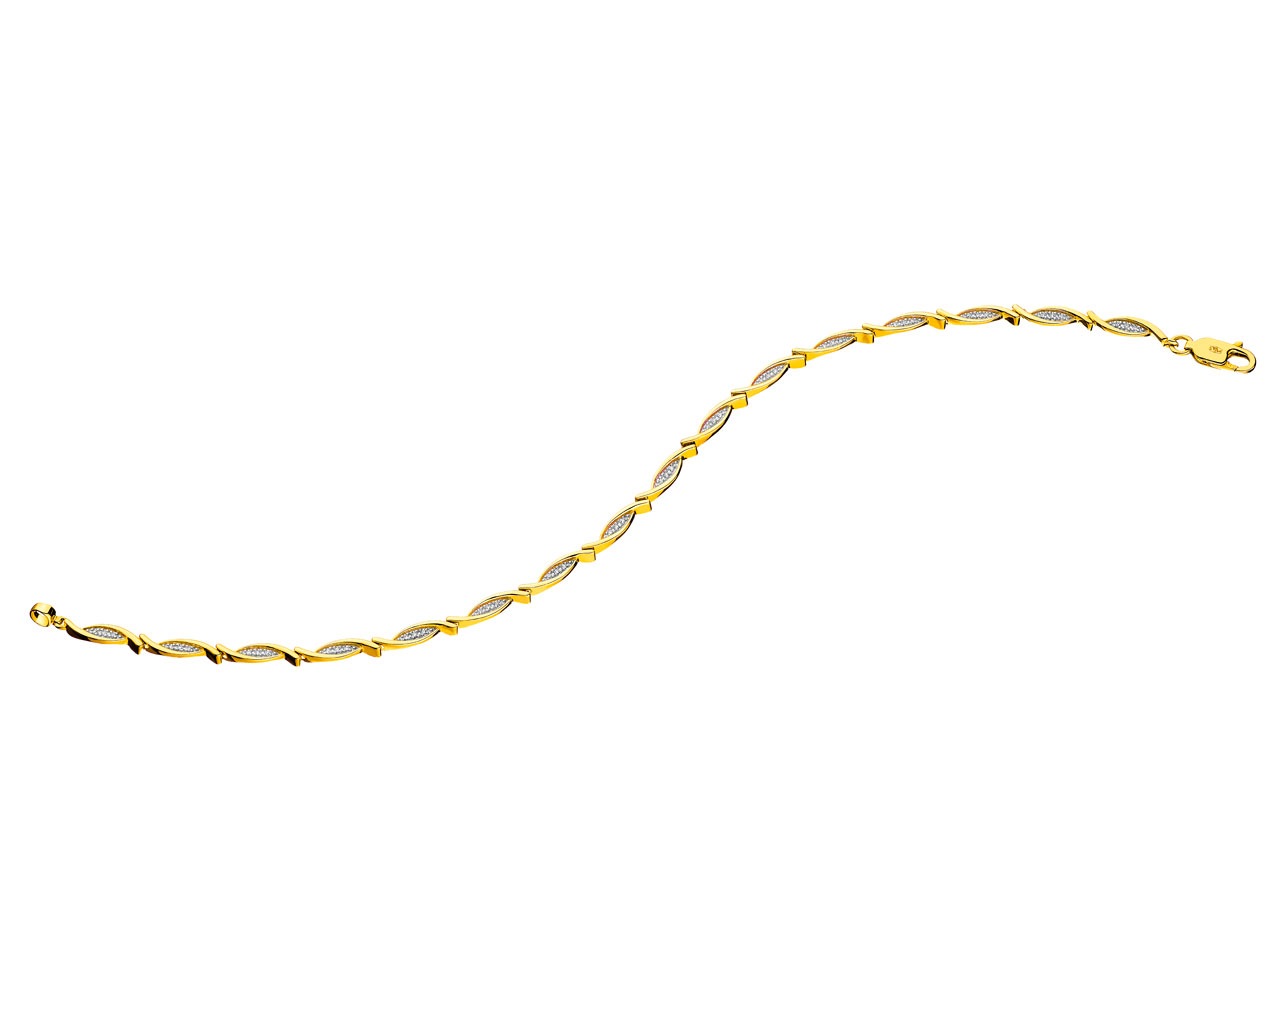 Bransoleta z żółtego złota z diamentami 0,13 ct - próba 585